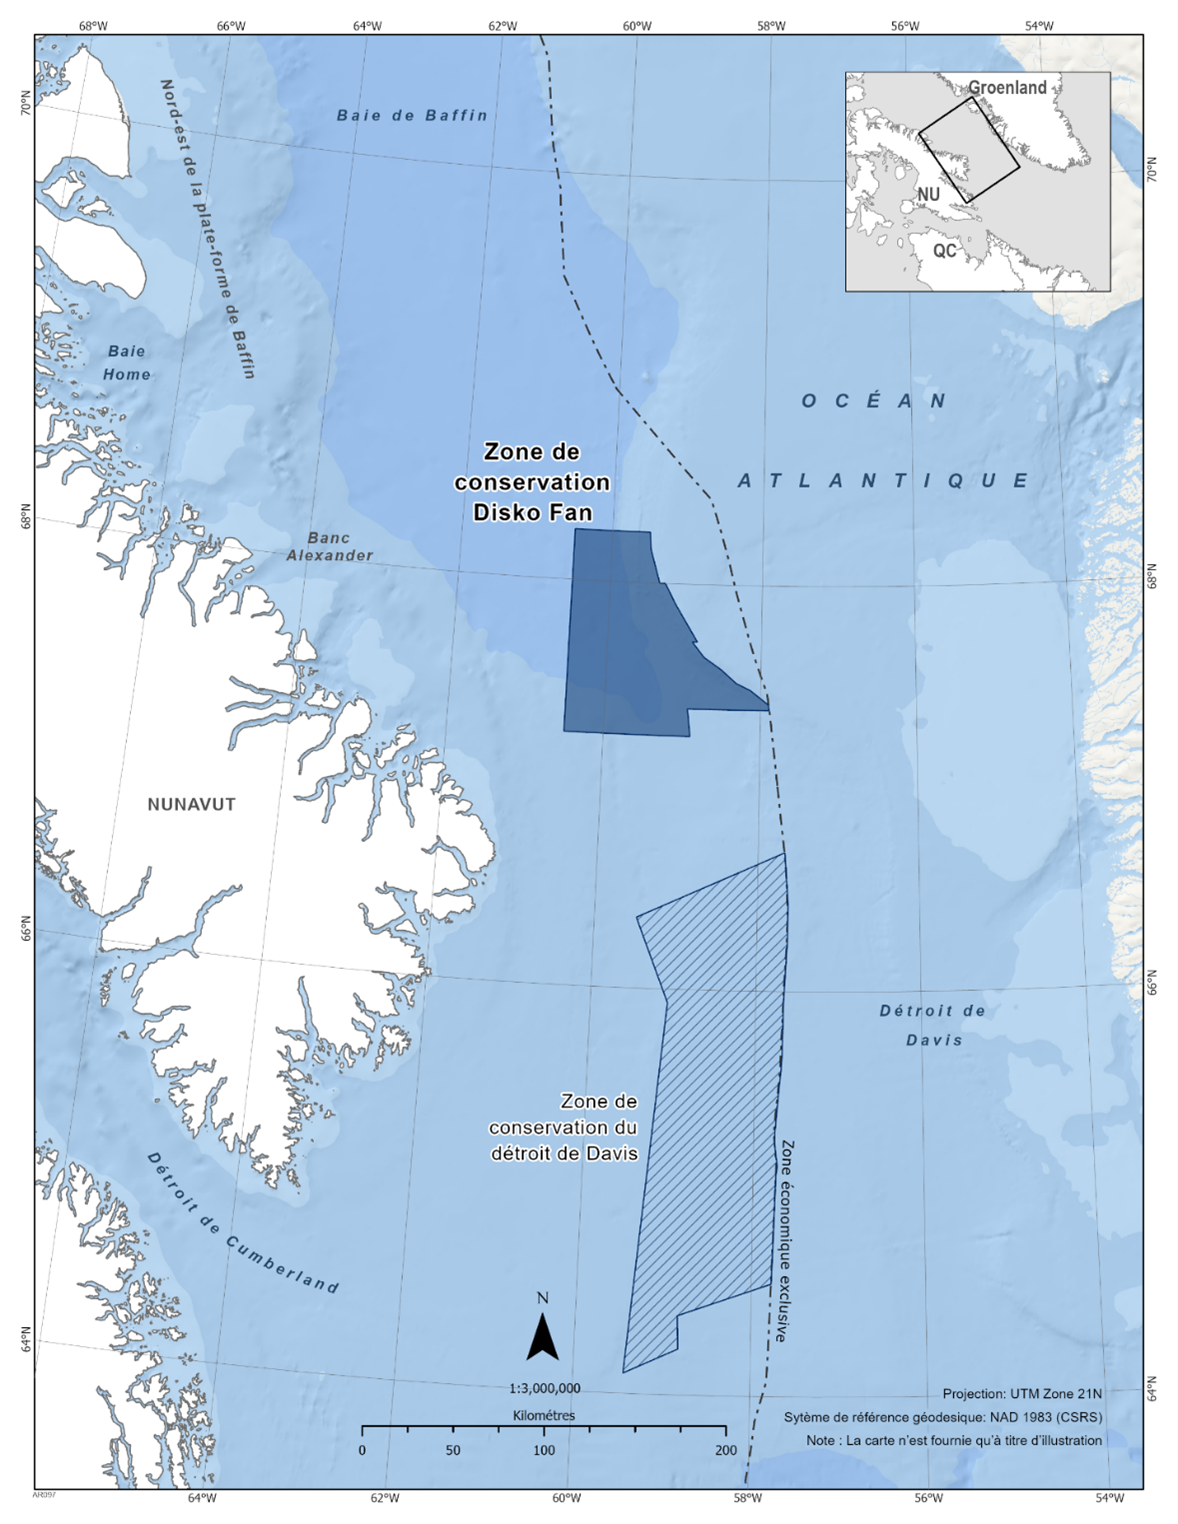 Carte de la zone de conservation de Disko Fan en bleu foncé. La carte présente également d'autres refuges marins à proximité avec des lignes diagonales bleu foncé (zone de conservation du détroit de Davis). 